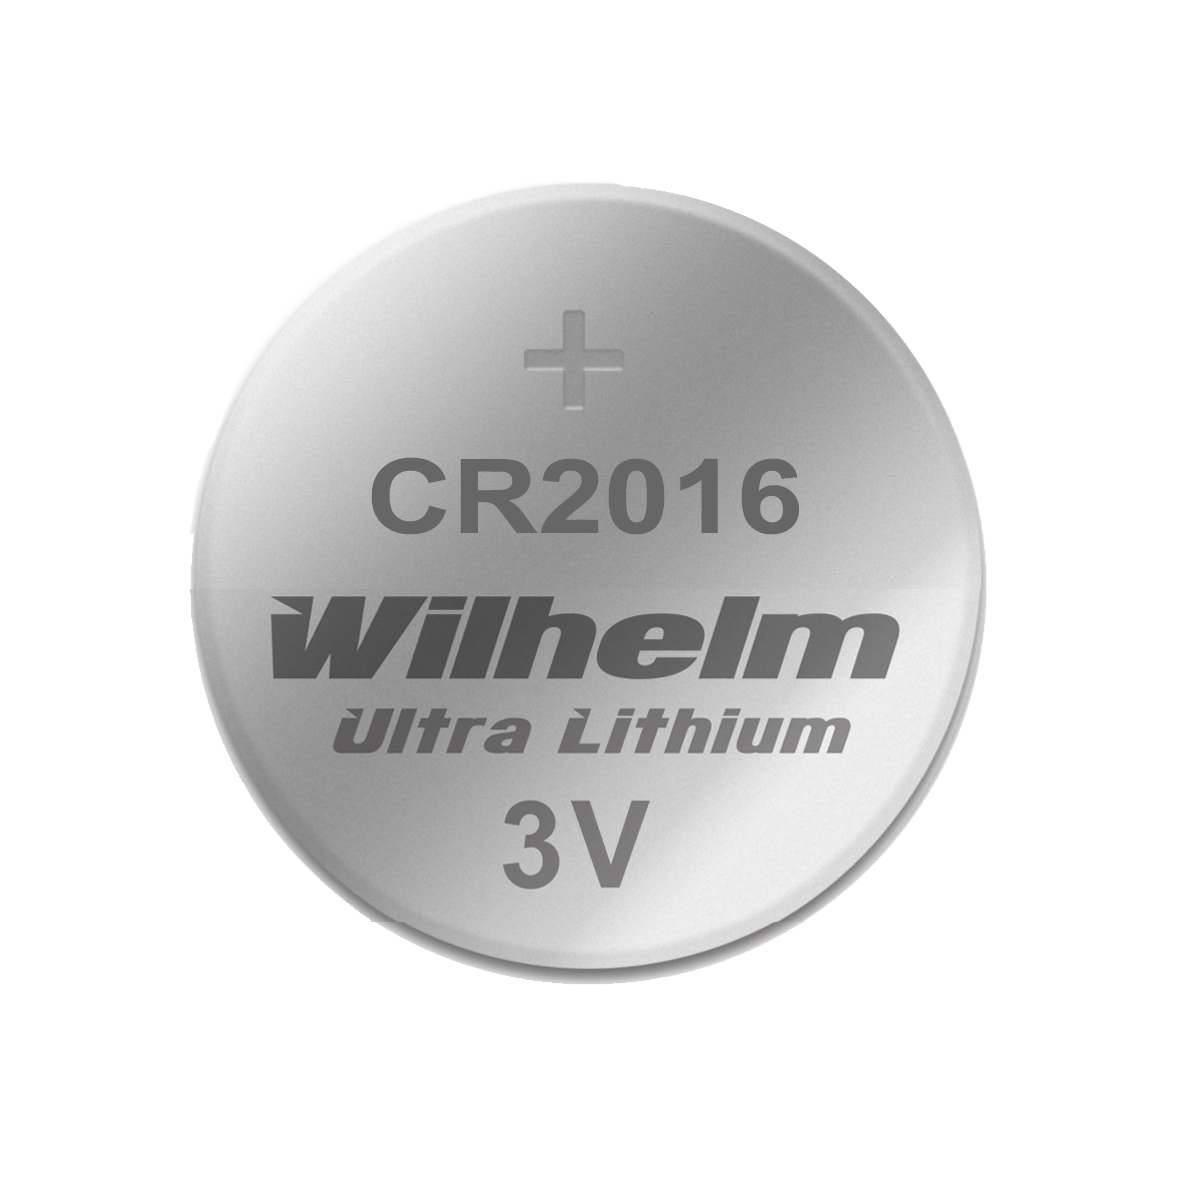 CR2016 Lithium